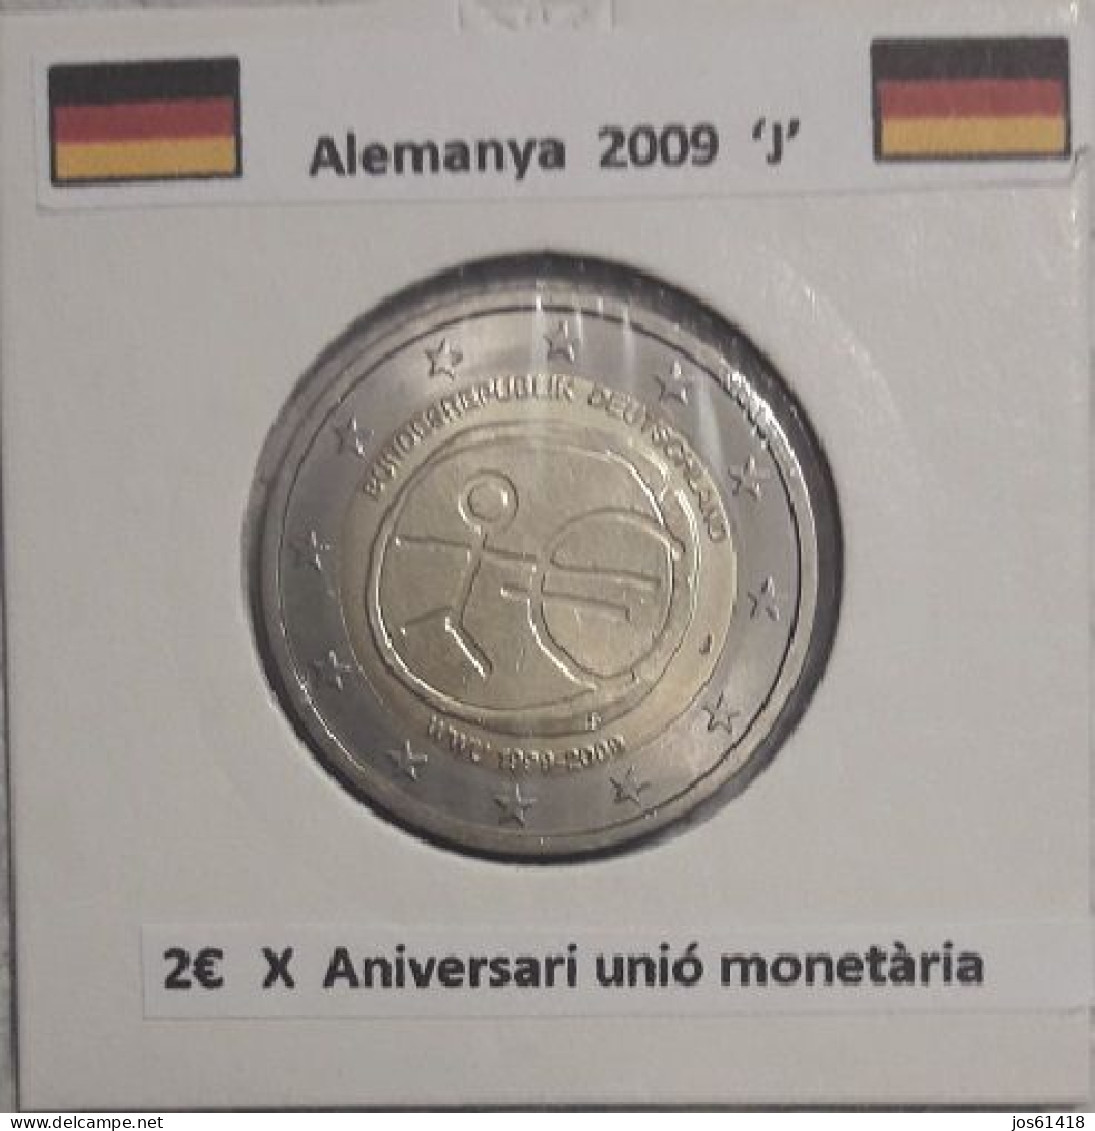 2 Euros Alemania / Germany  2009 WWU 1999 - 2009  D,G O J Sin Circular - Germania